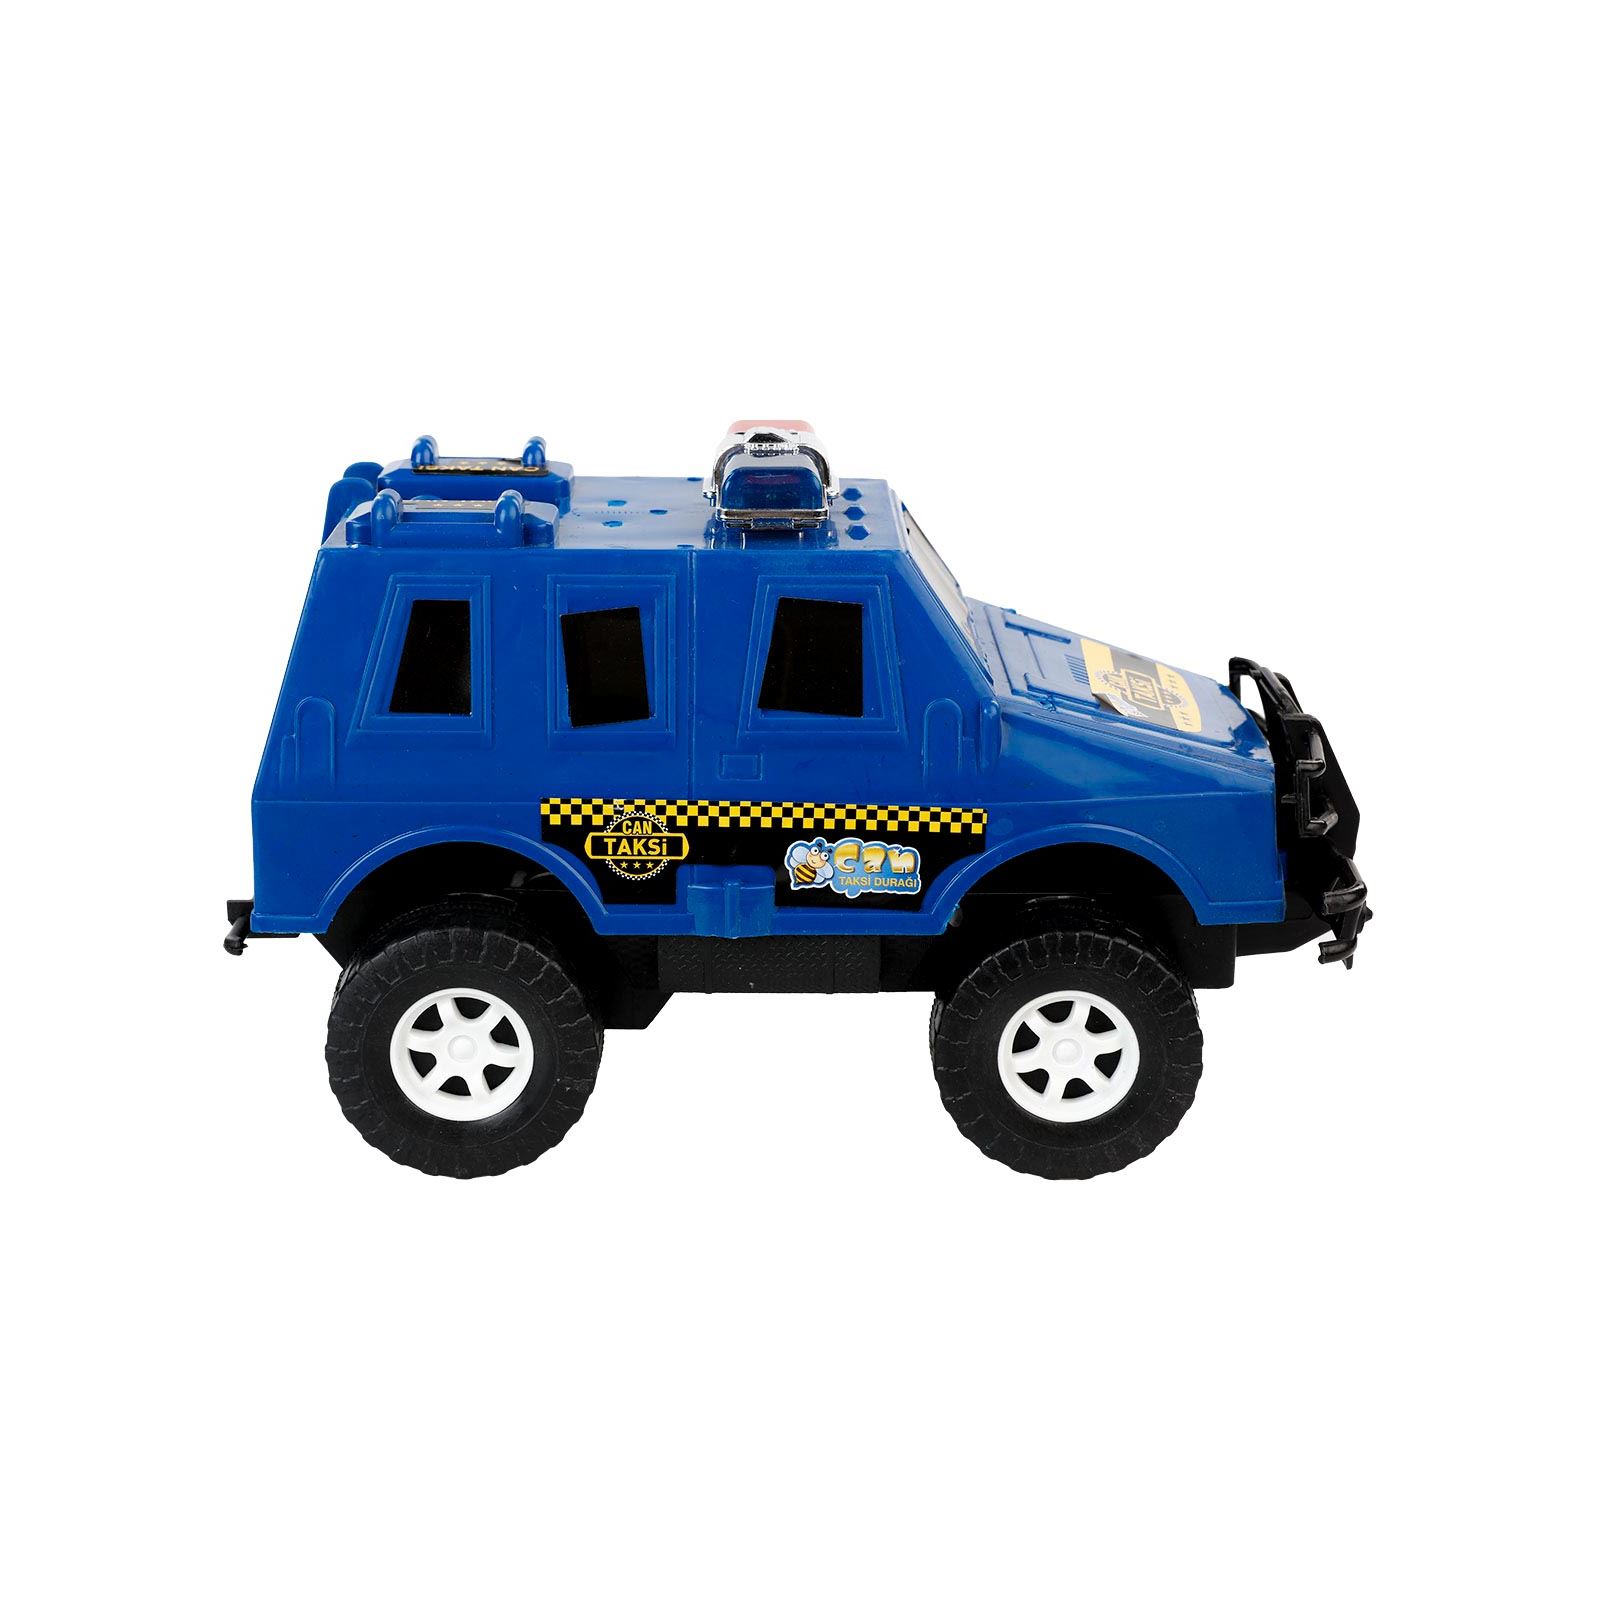 Can Oyuncak Sürtmeli Polis Arabası Mavi